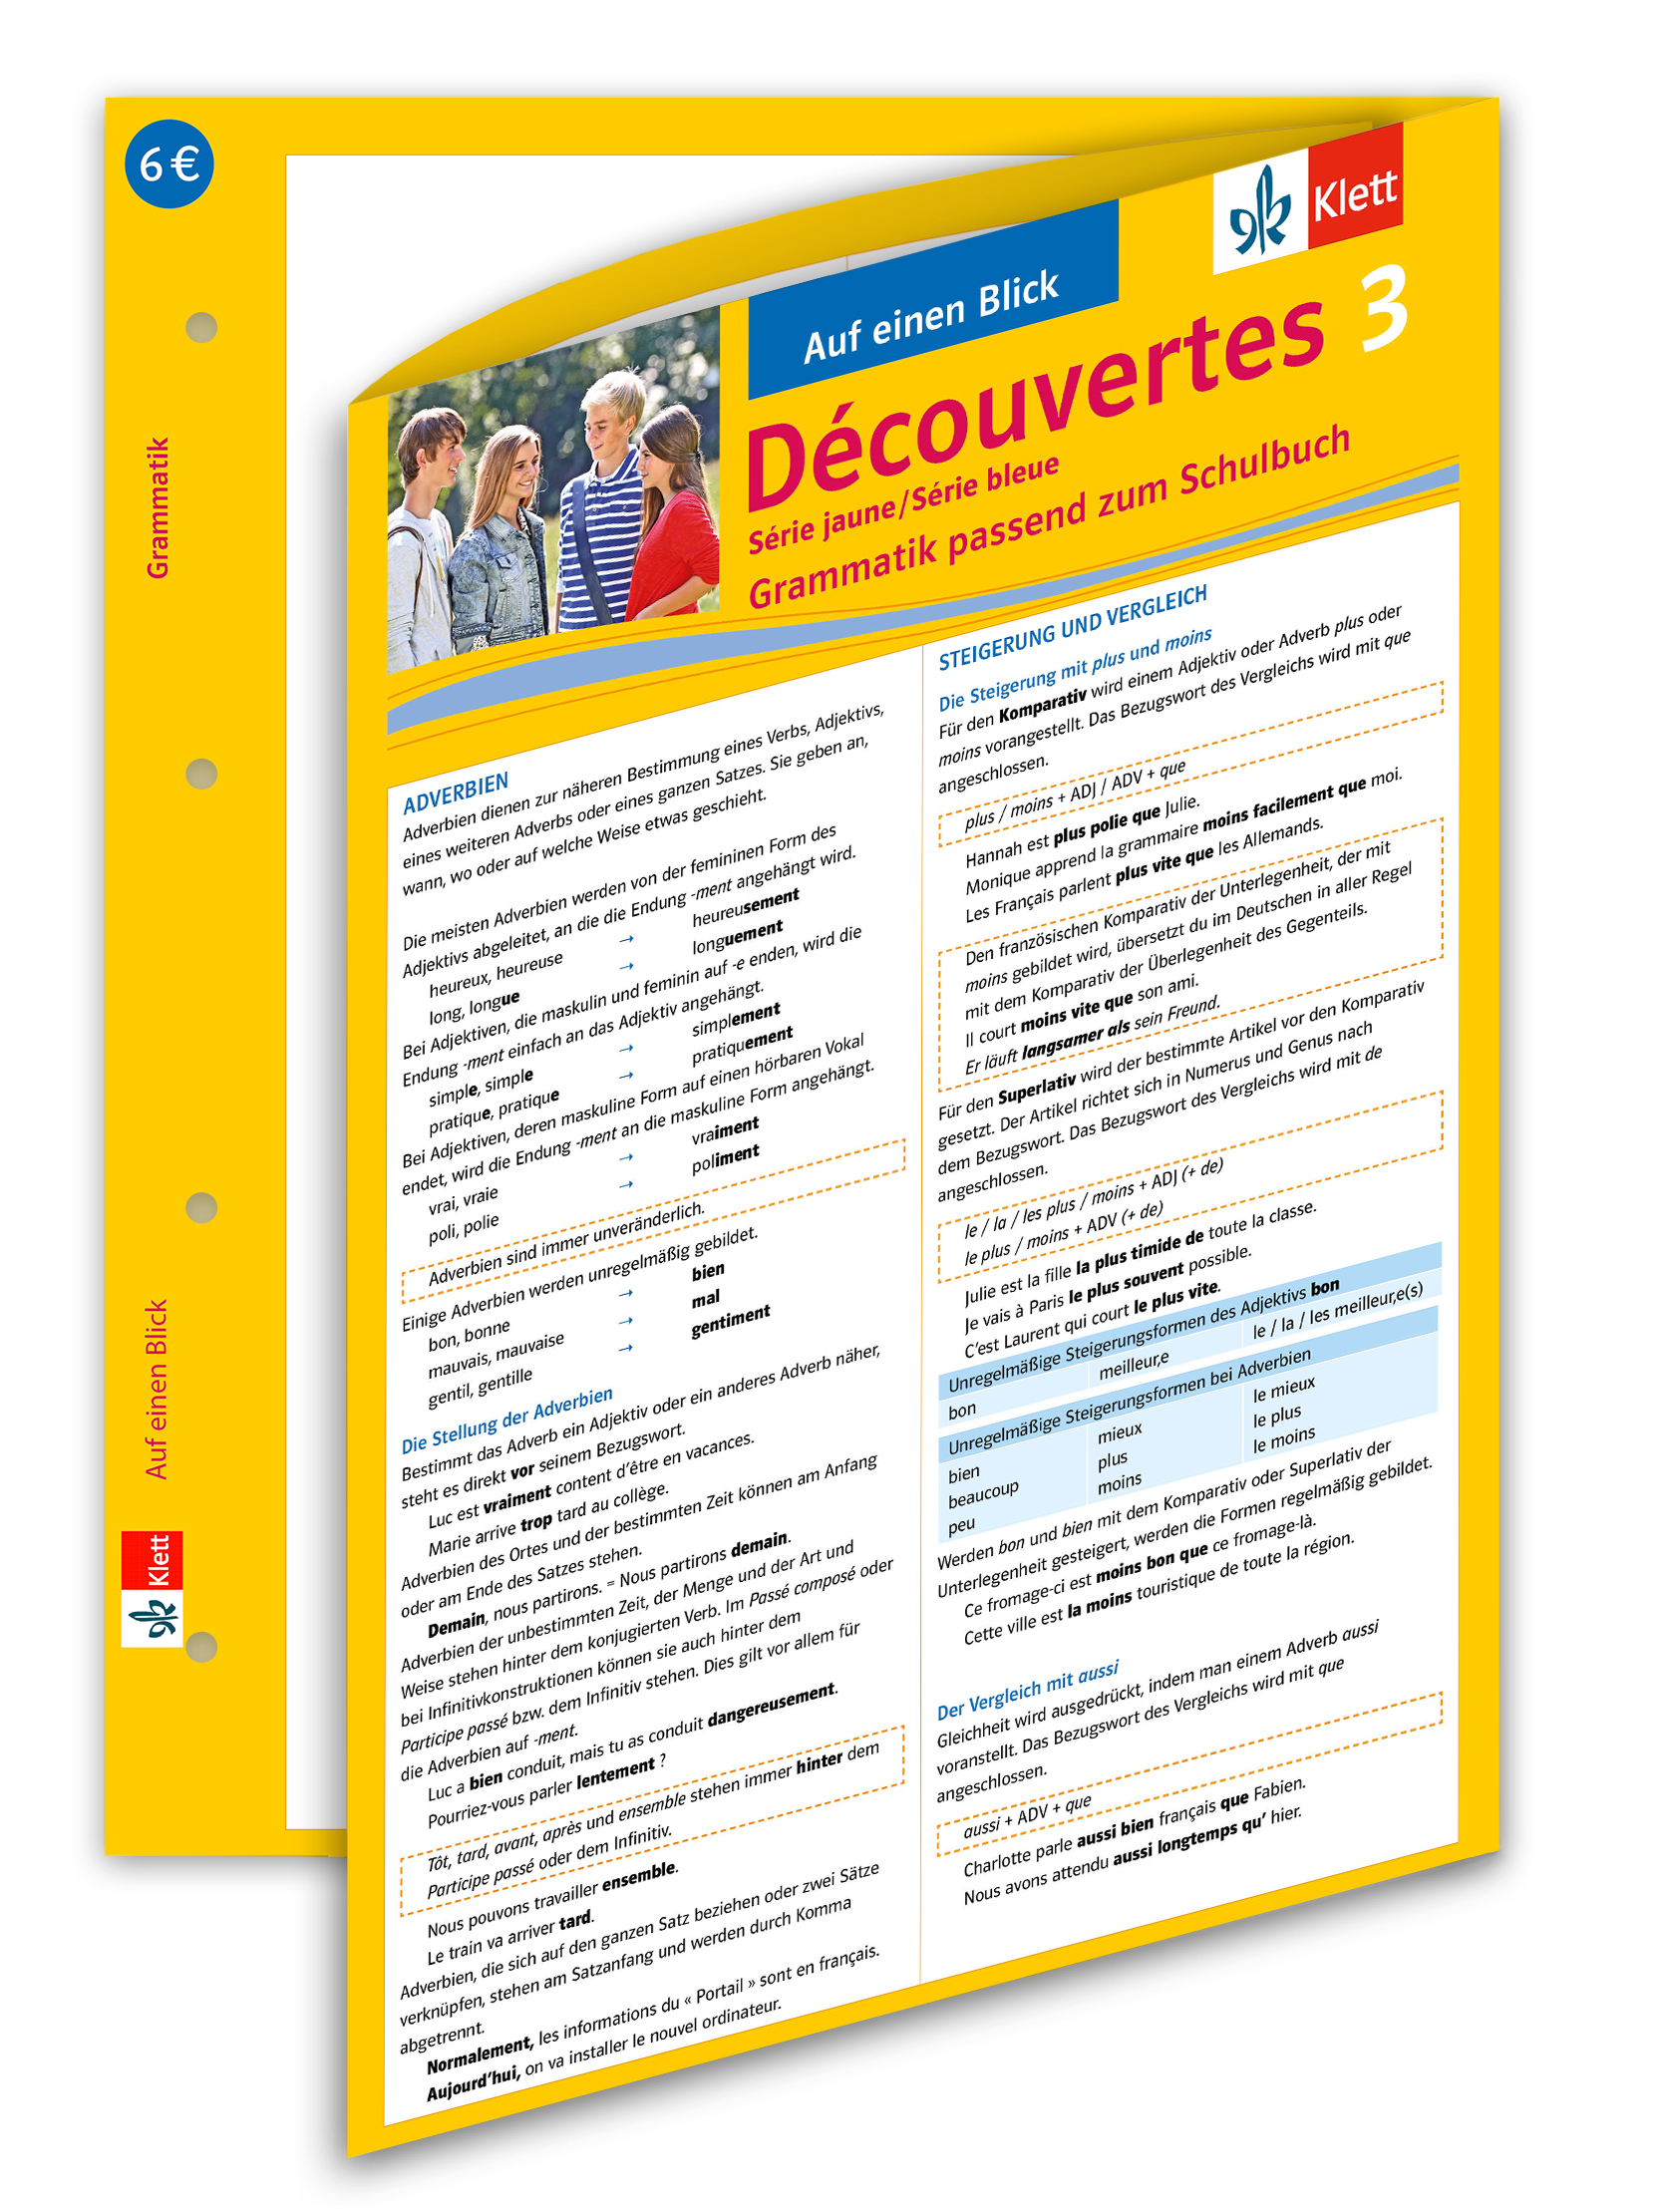 Découvertes Série jaune / Série bleue 3 - Auf einen Blick